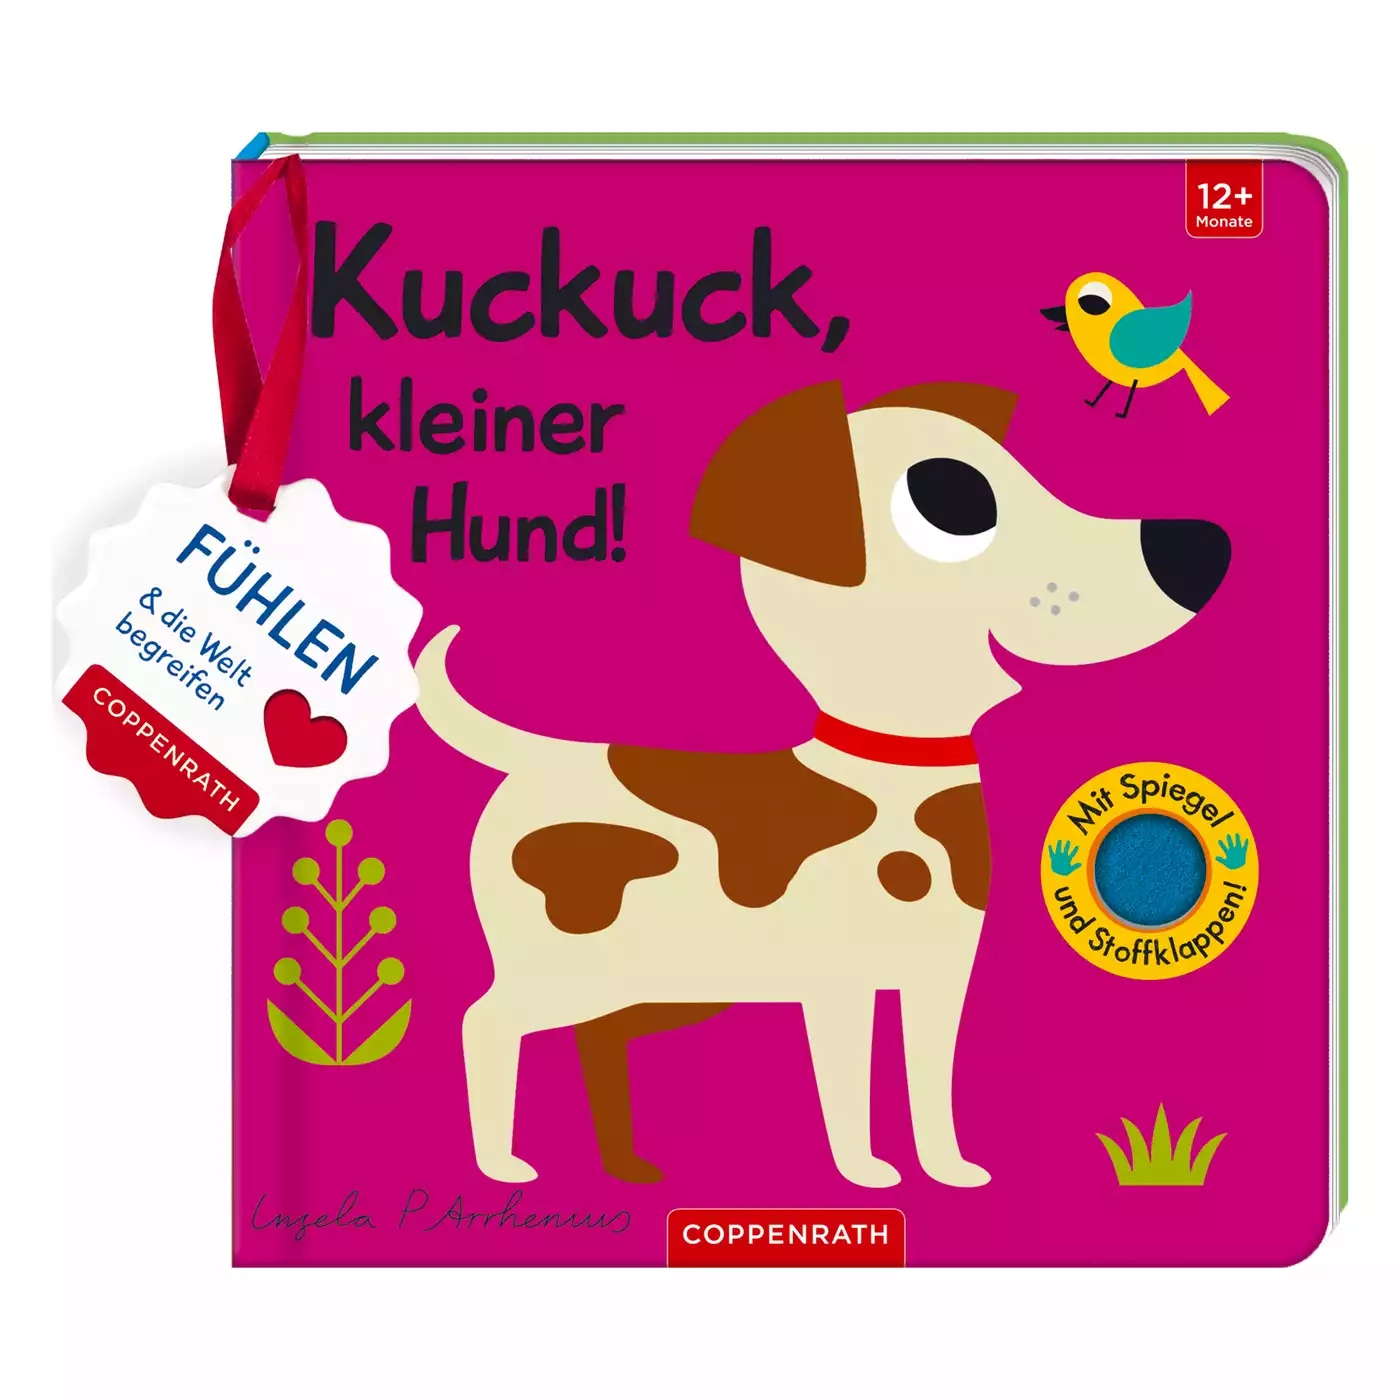 Mein Filz-Fühlbuch Kuckuck, kleiner Hund COPPENRATH 2000576309901 3